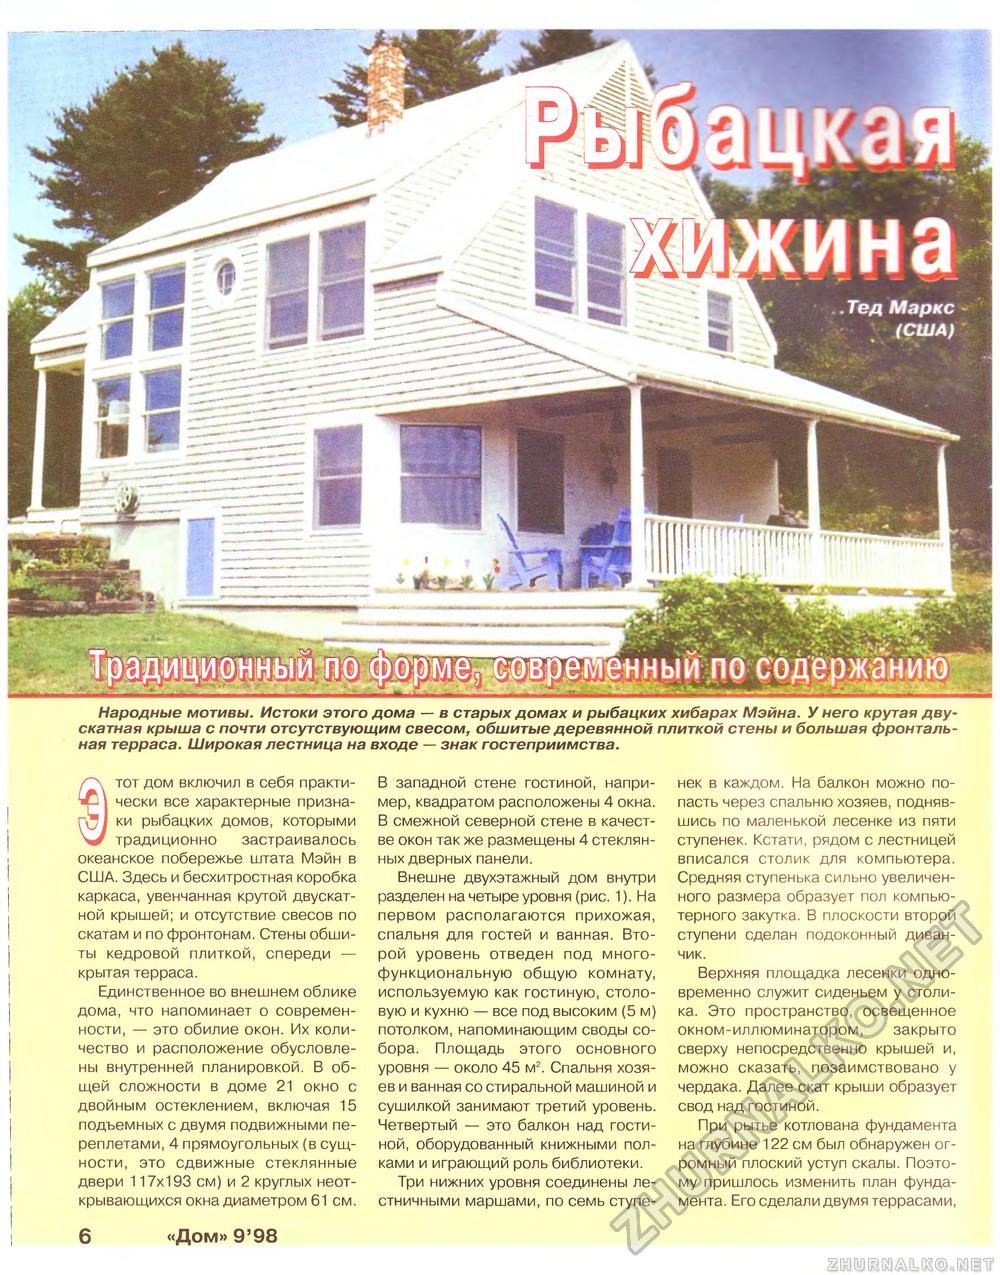 Дом 1998-09, страница 6